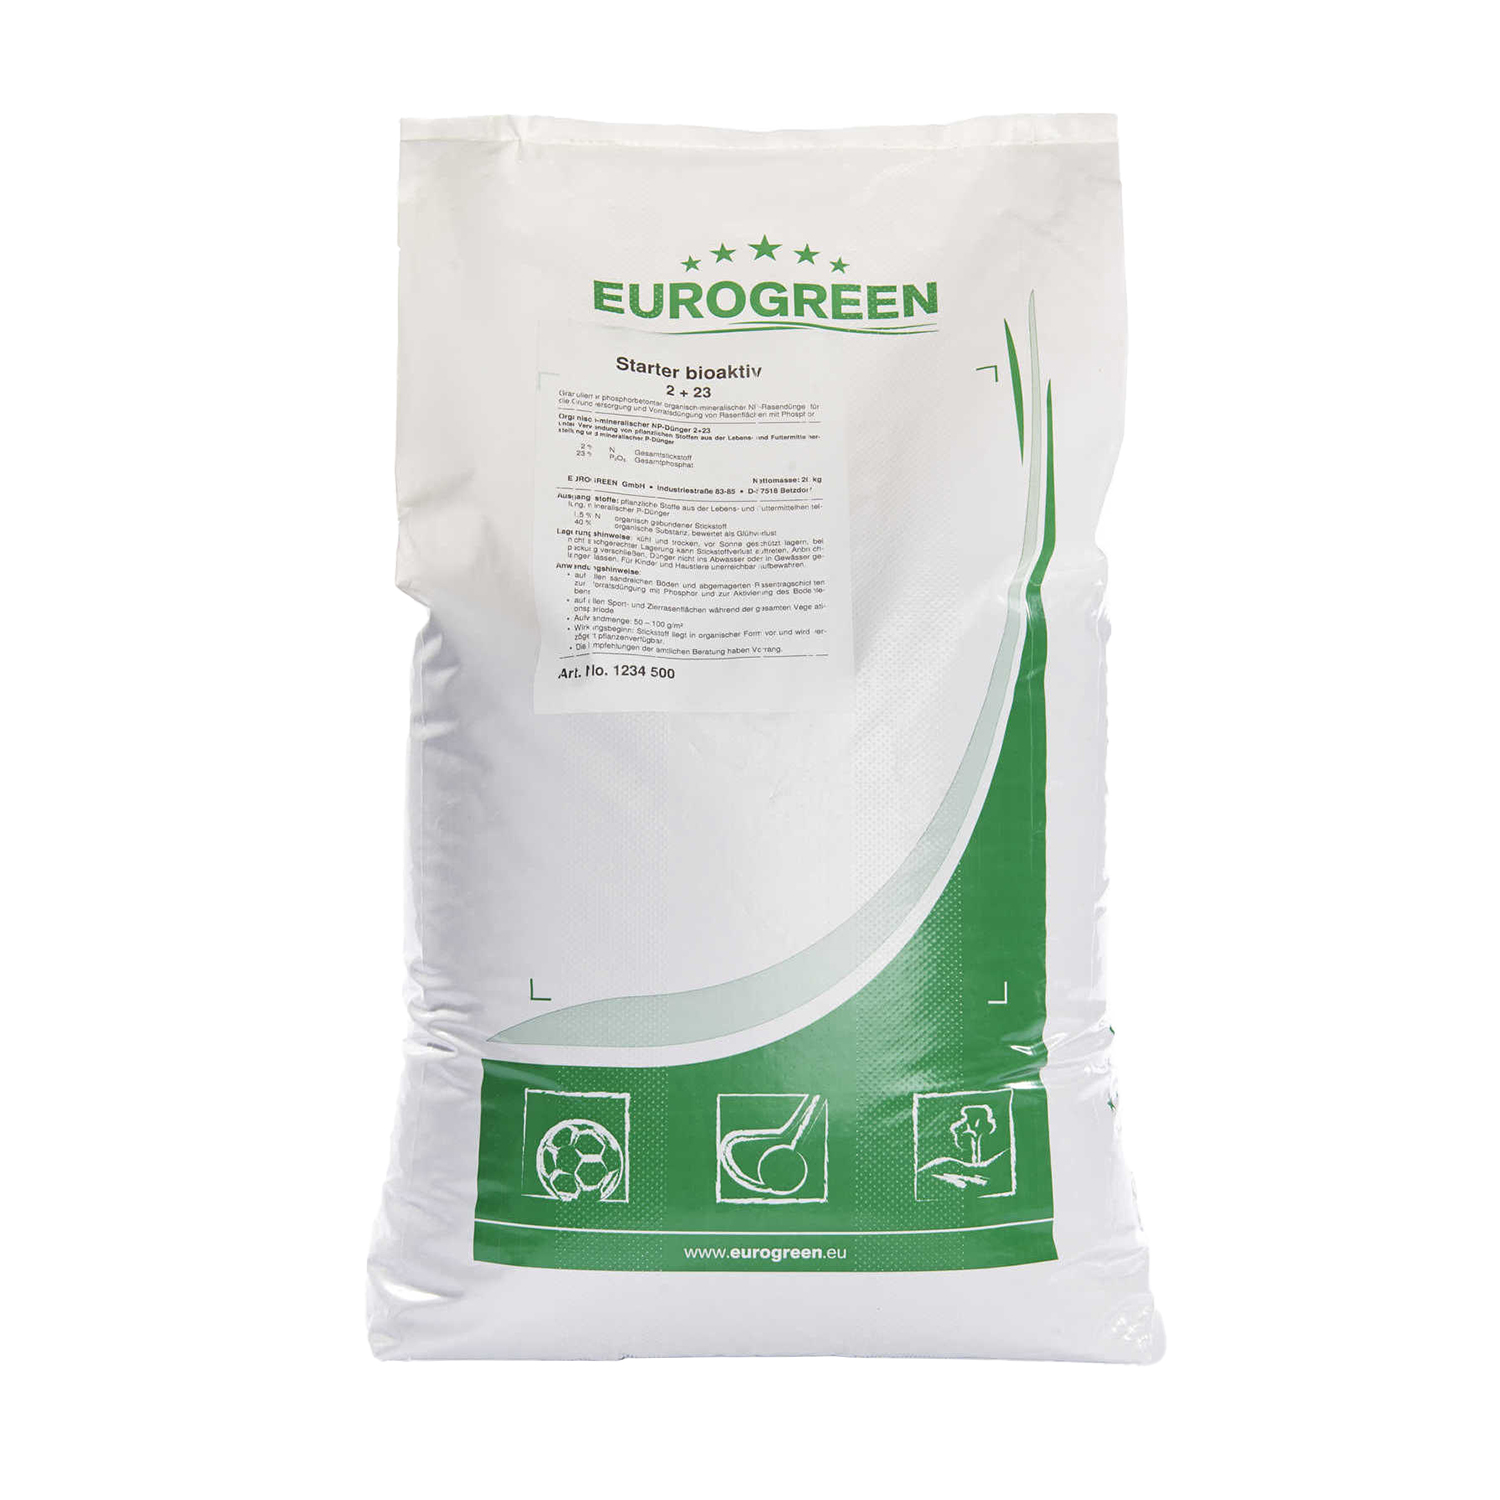 Der Starterdünger bioaktiv von EUROGREEN ist ein granulierter phosphorbetonter organisch-mineralischer Starterdünger